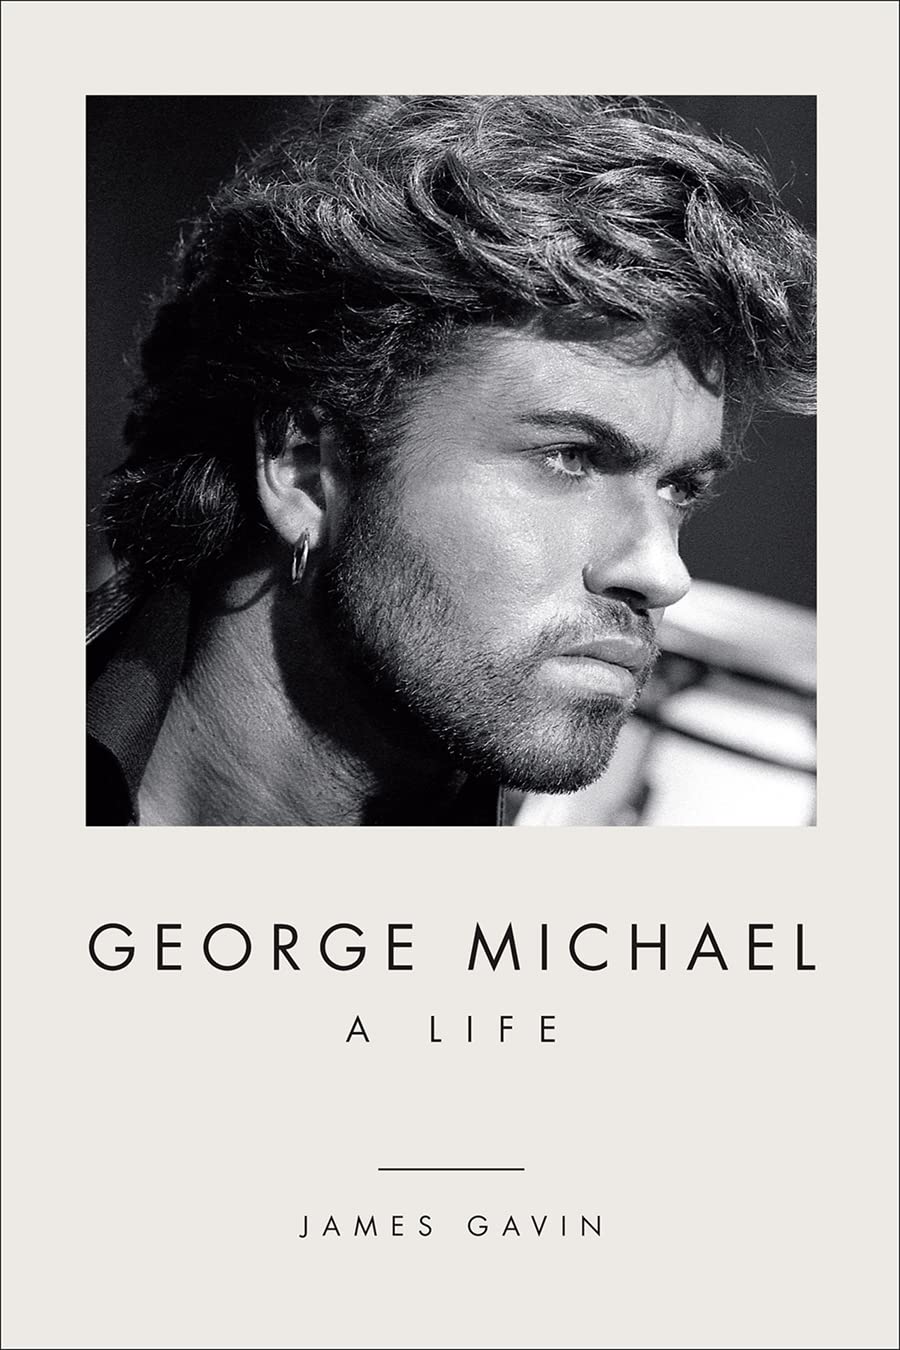 Portada de ‘George Michael: A Life’ (2022) biografía escrita por el periodista James Gavin